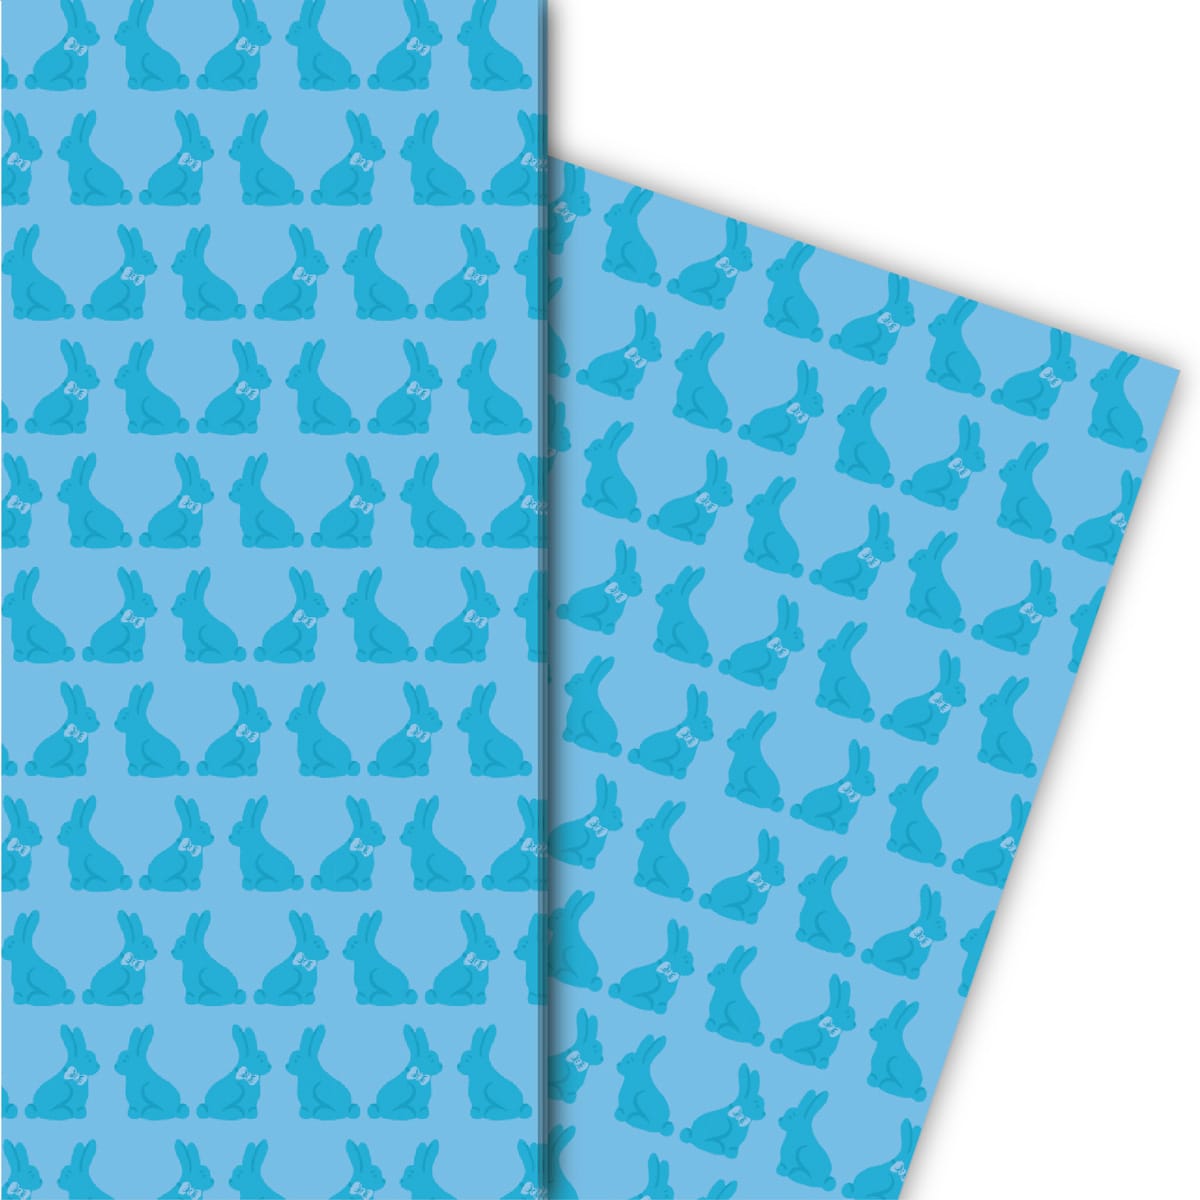 Kartenkaufrausch: Edles Oster Geschenkpapier mit aus unserer Oster Papeterie in hellblau